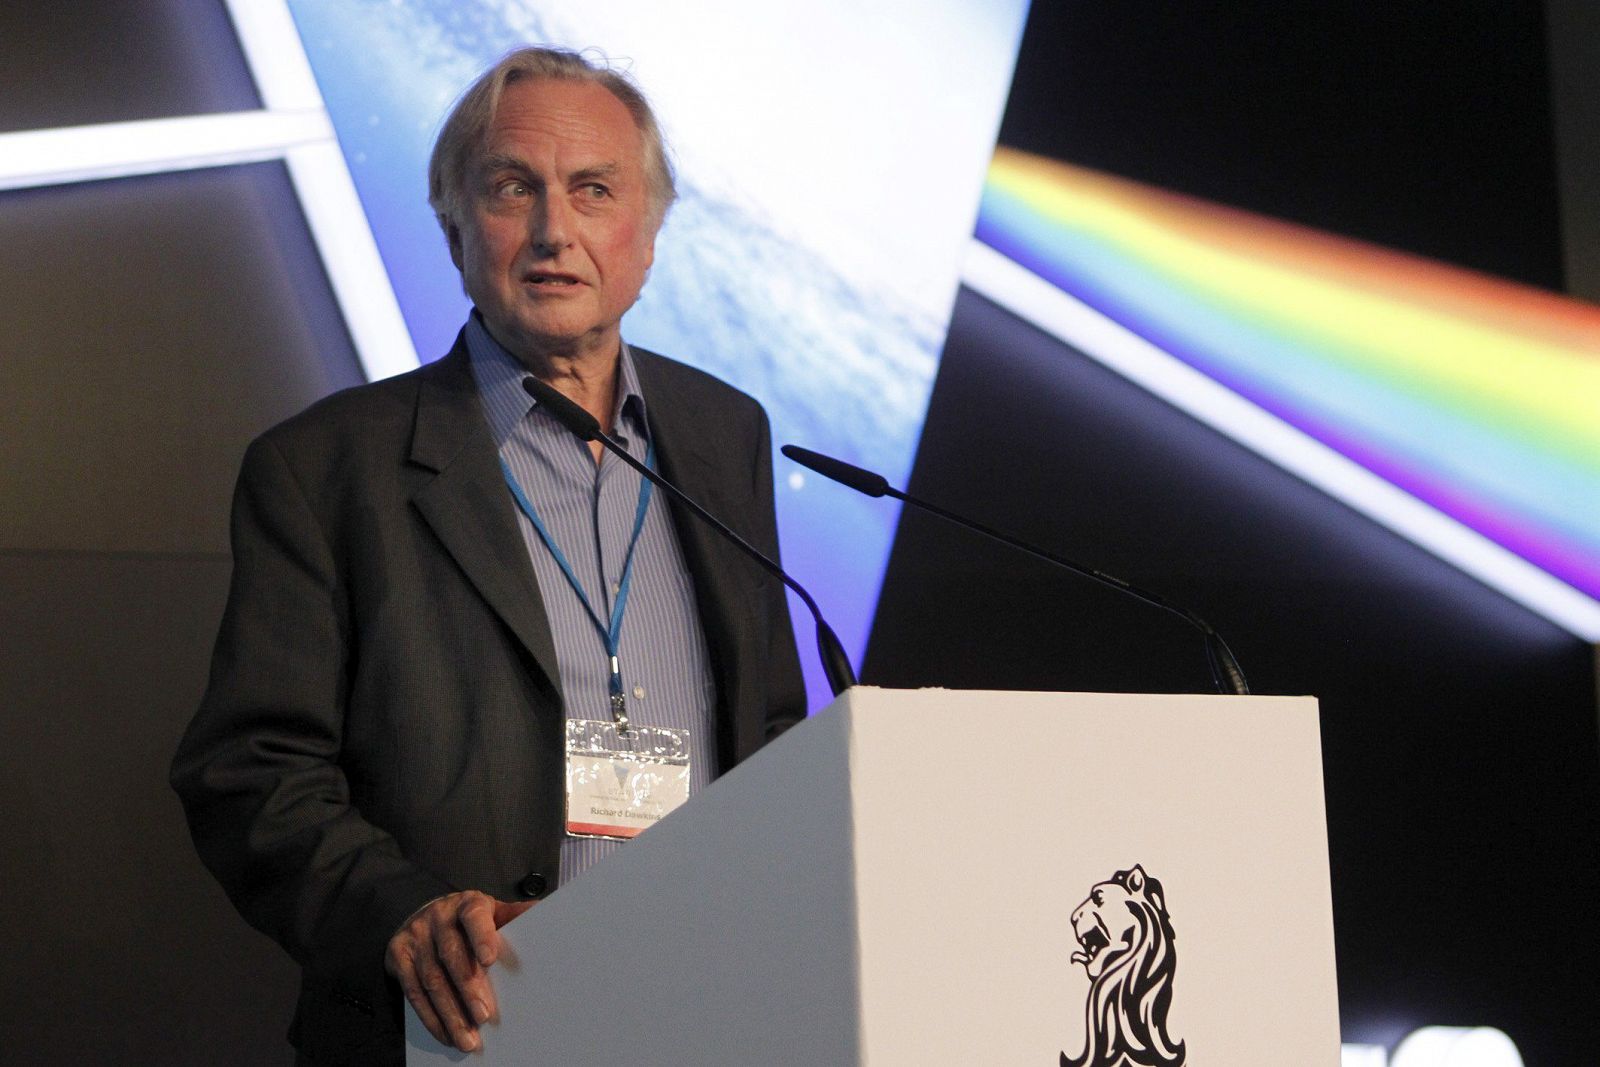 El biólogo evolucionista británico Richard Dawkins, durante su intervención en el festival científico Starmus 2014 en Tenerife.